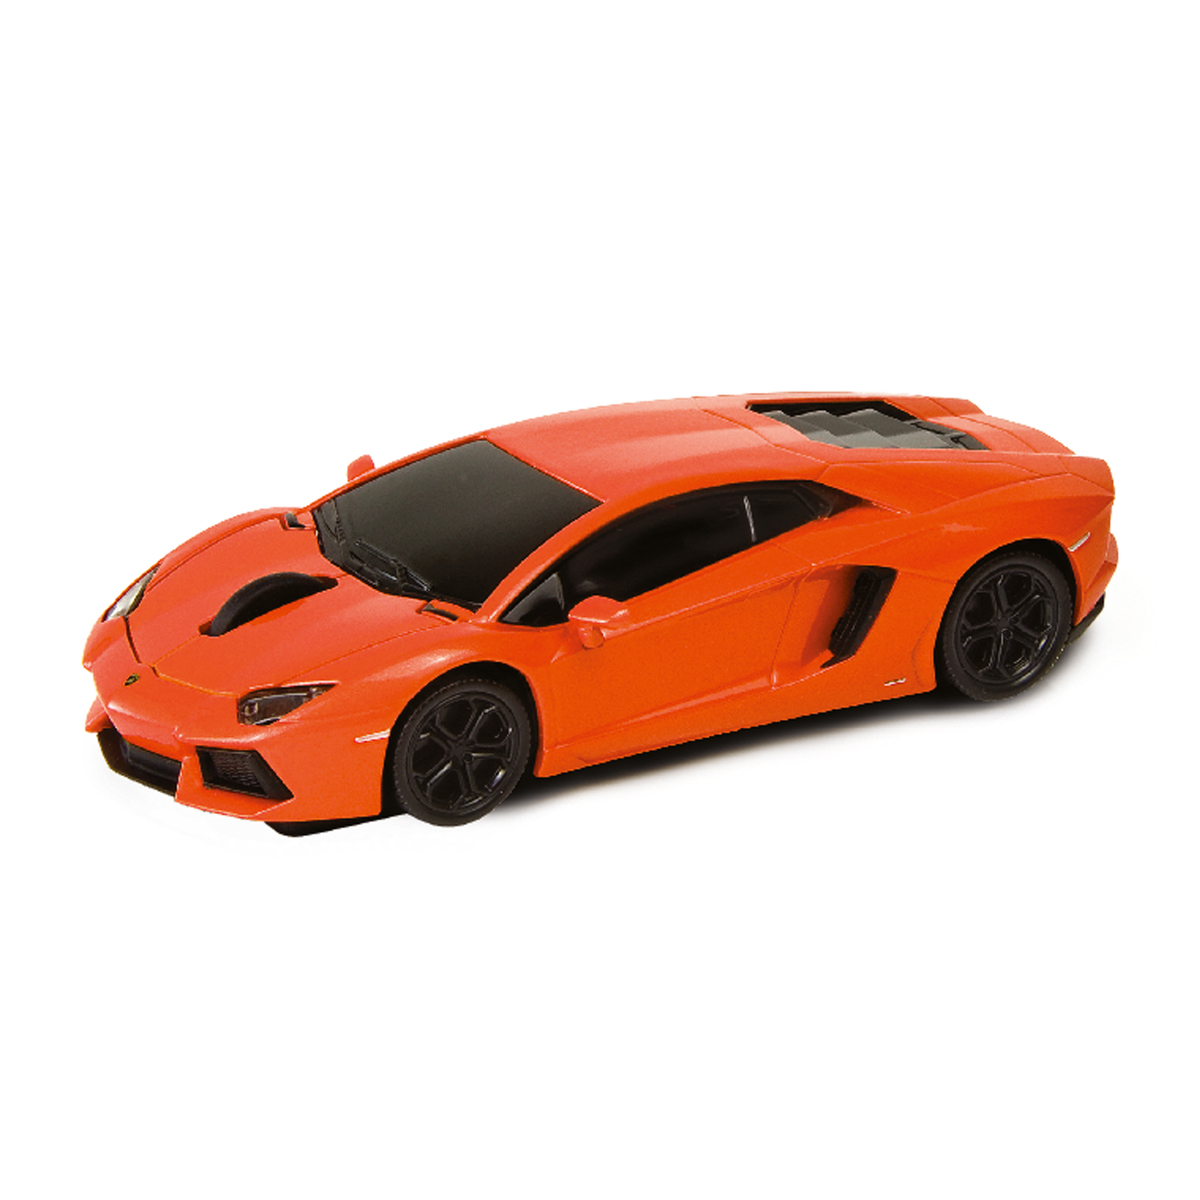 LM Computermaus Lamborghini Aventador 1:32 ORANGE orange